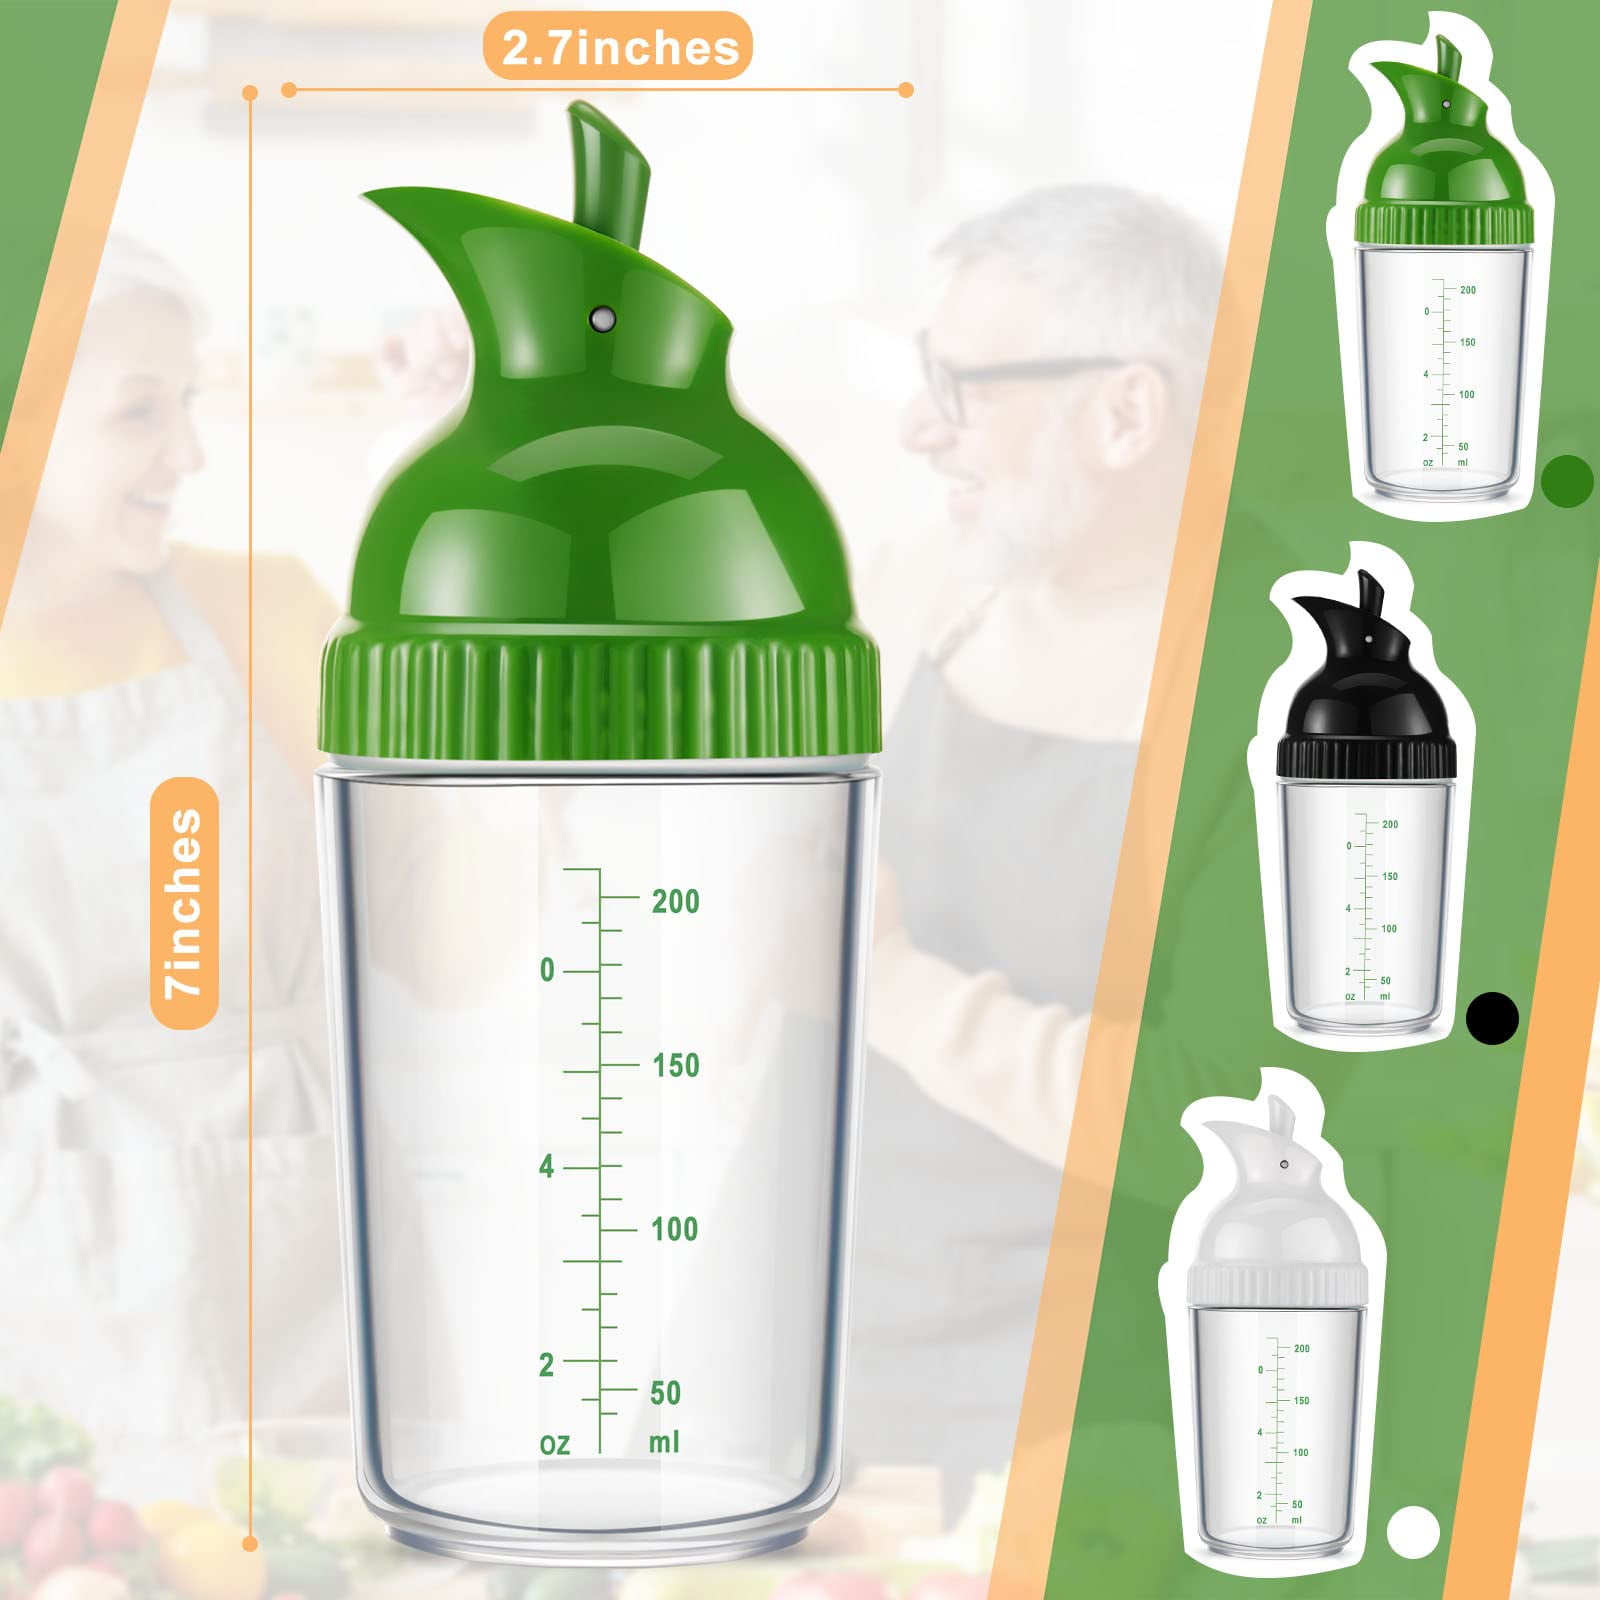 Best Deal for Salad Dressing Mixer Bottle, Salad Dressing Shaker Cup